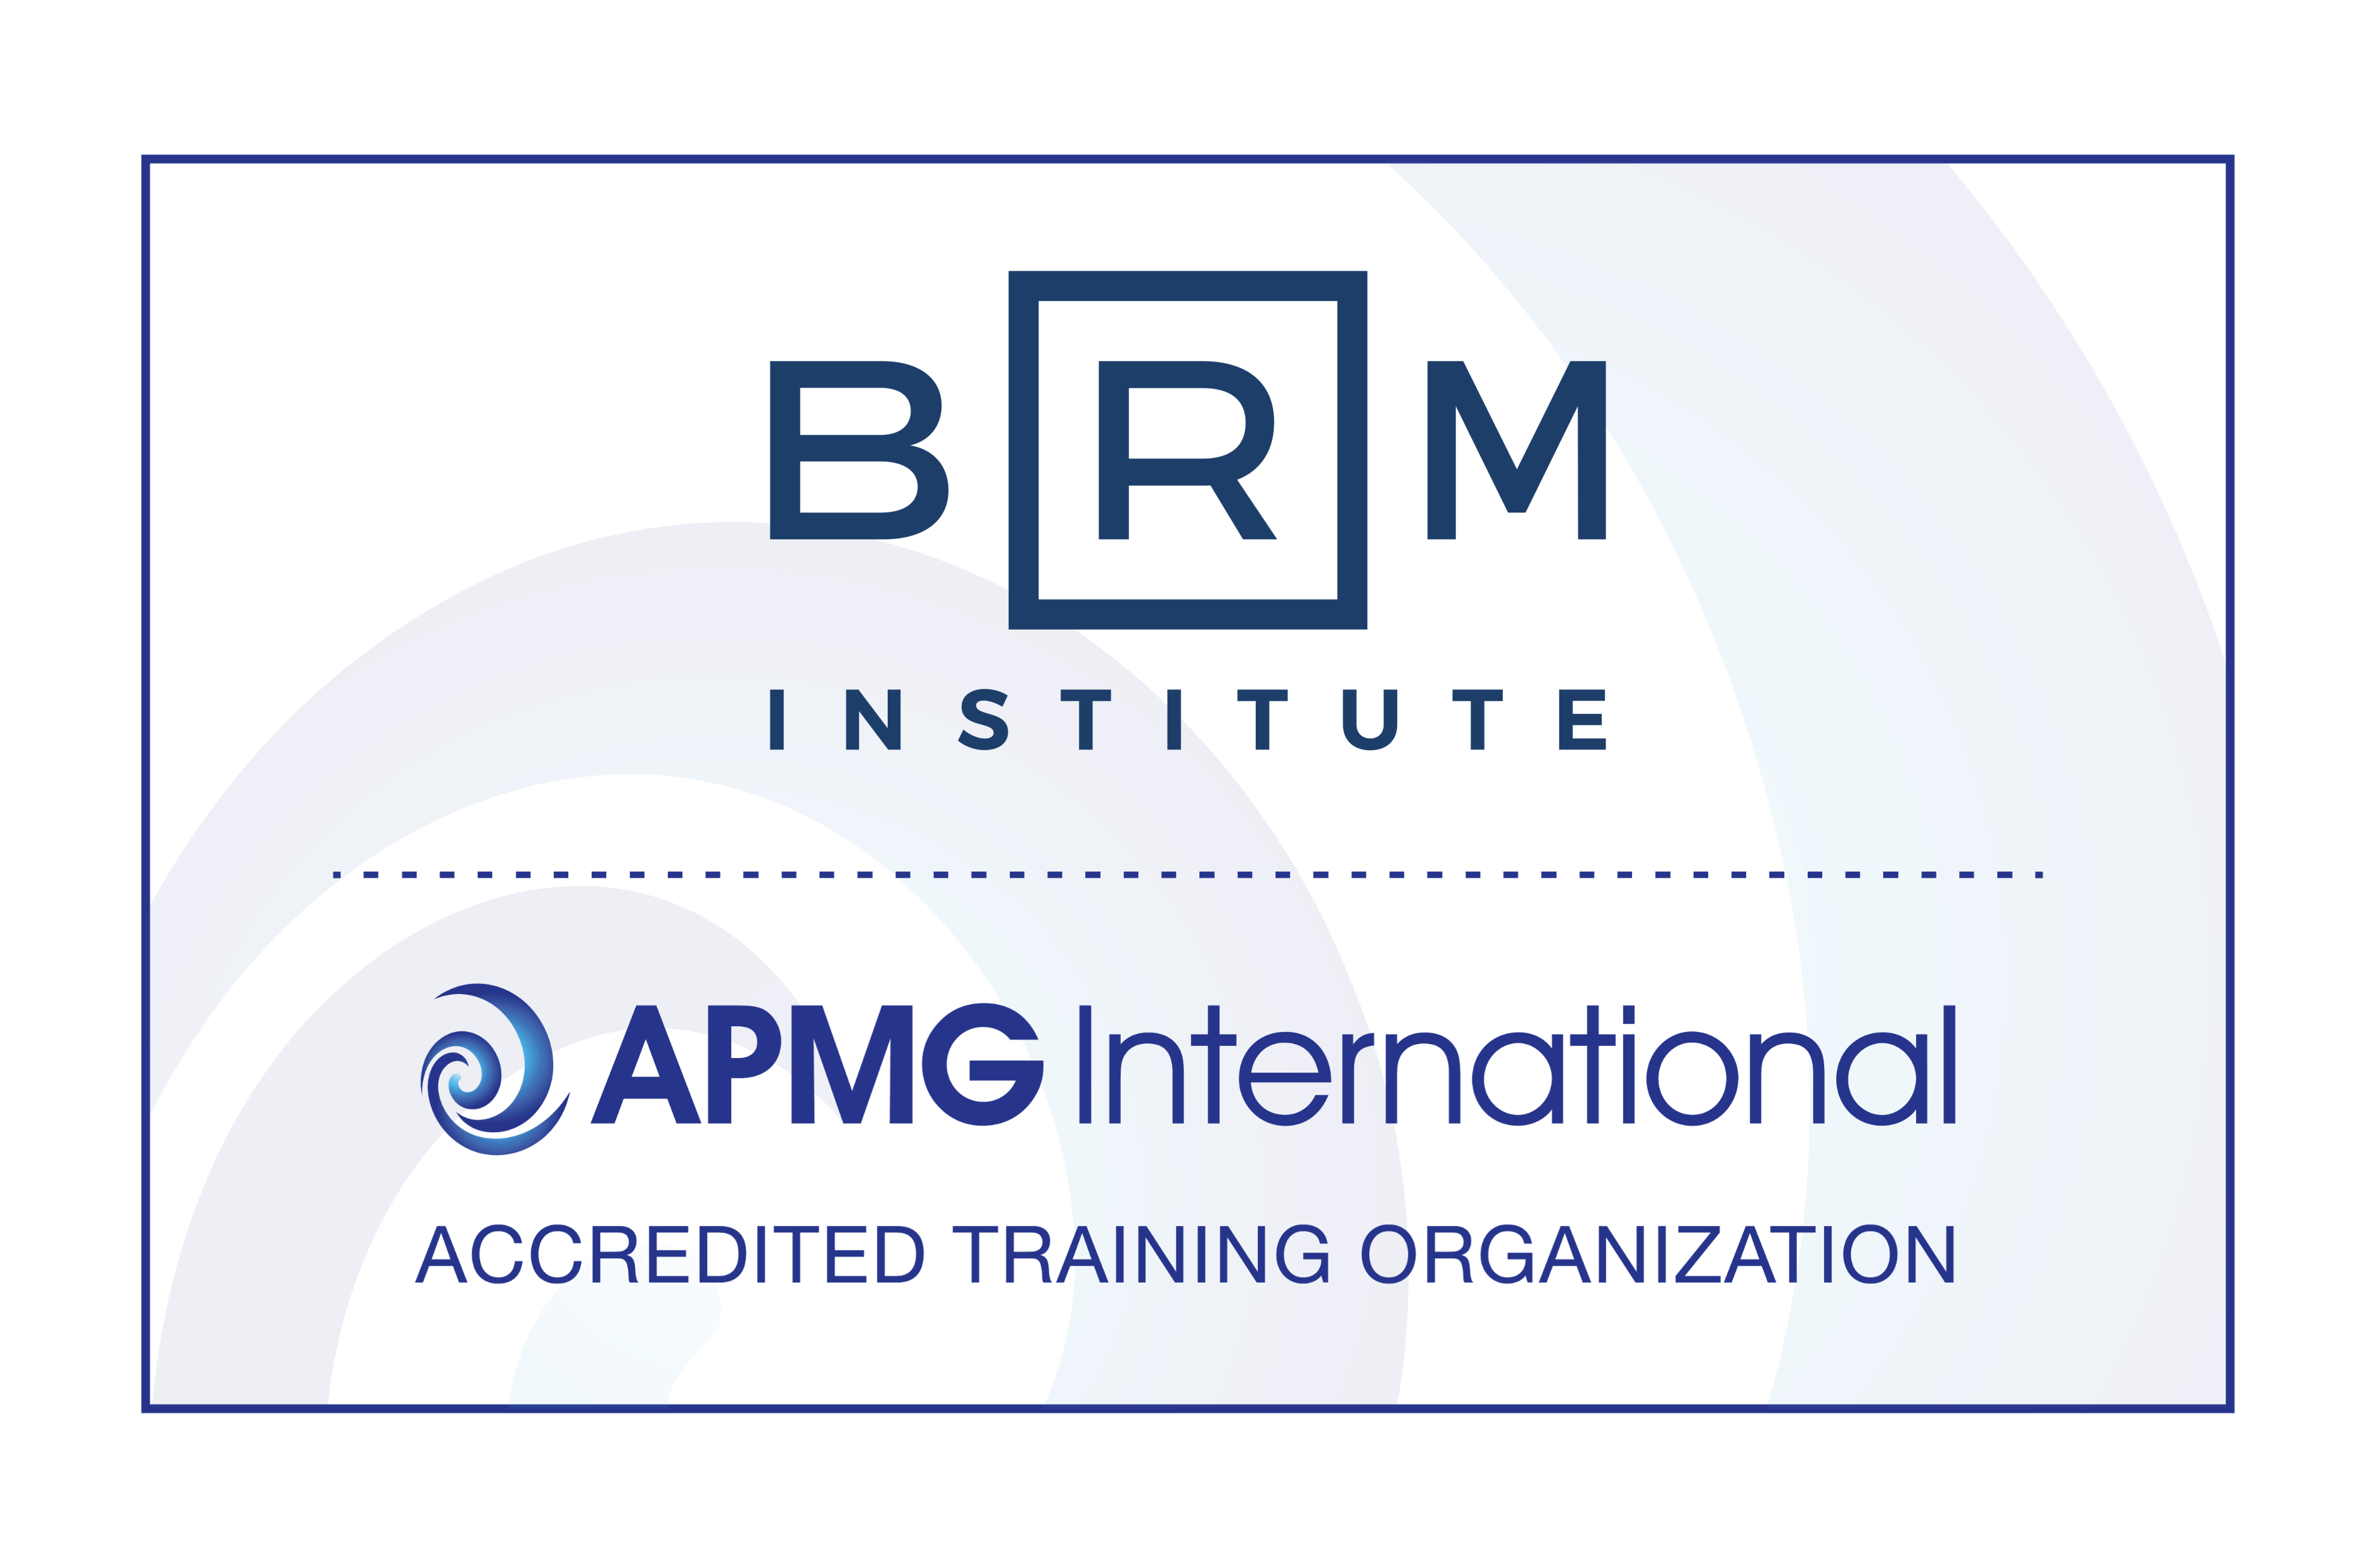 BRM Institute APMG